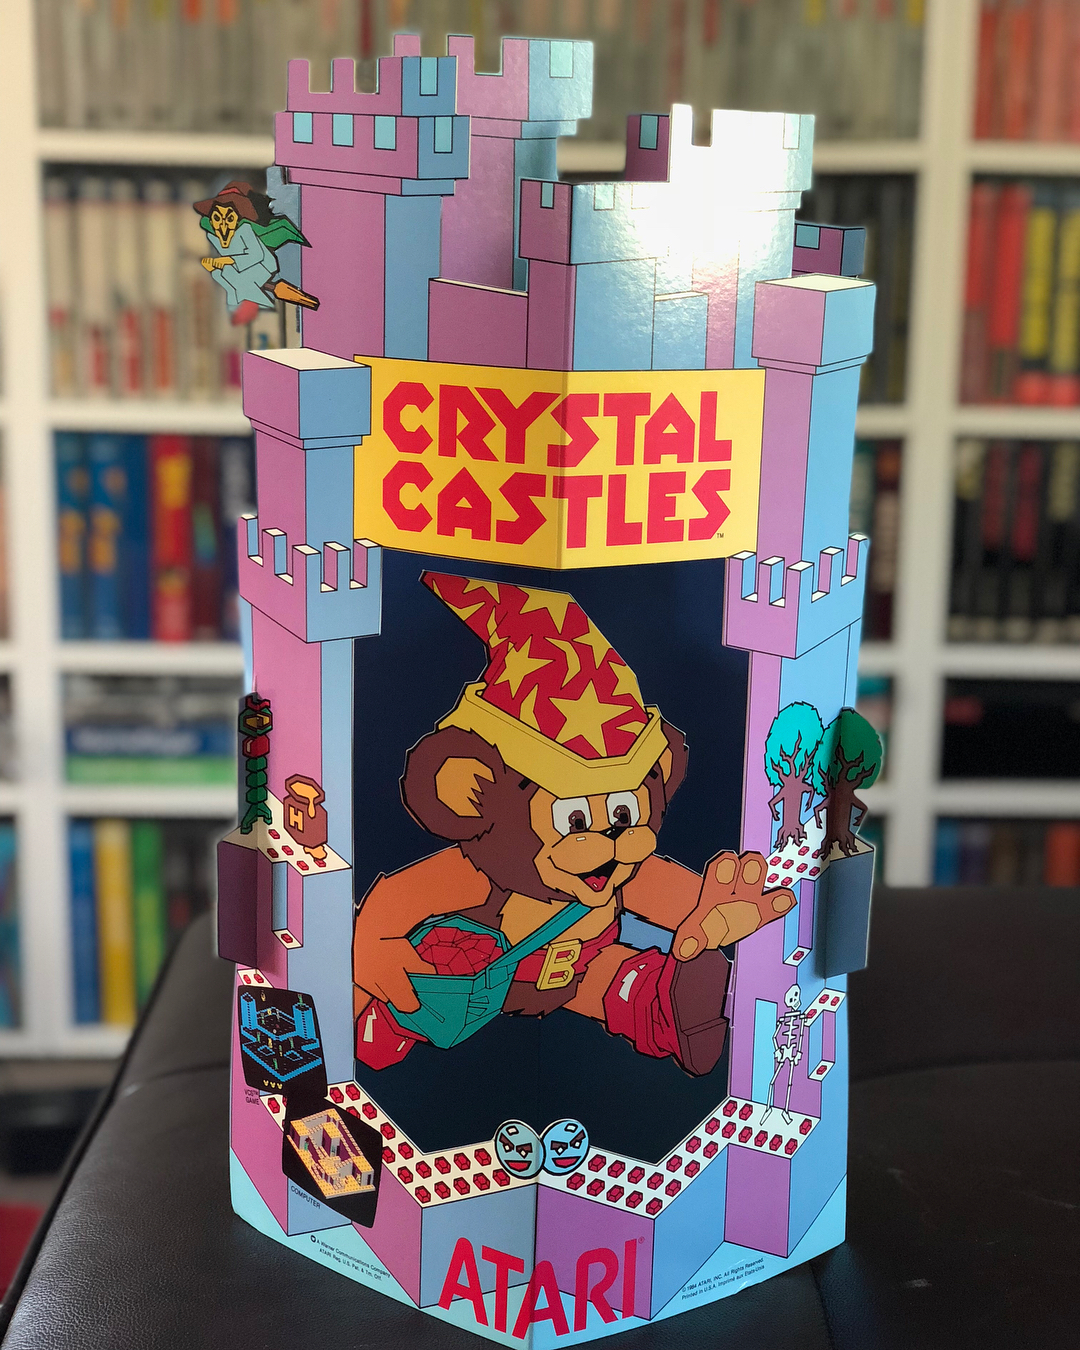 Atari 2600 VCS Crystal Castles : scans, dump, download, screenshots ...